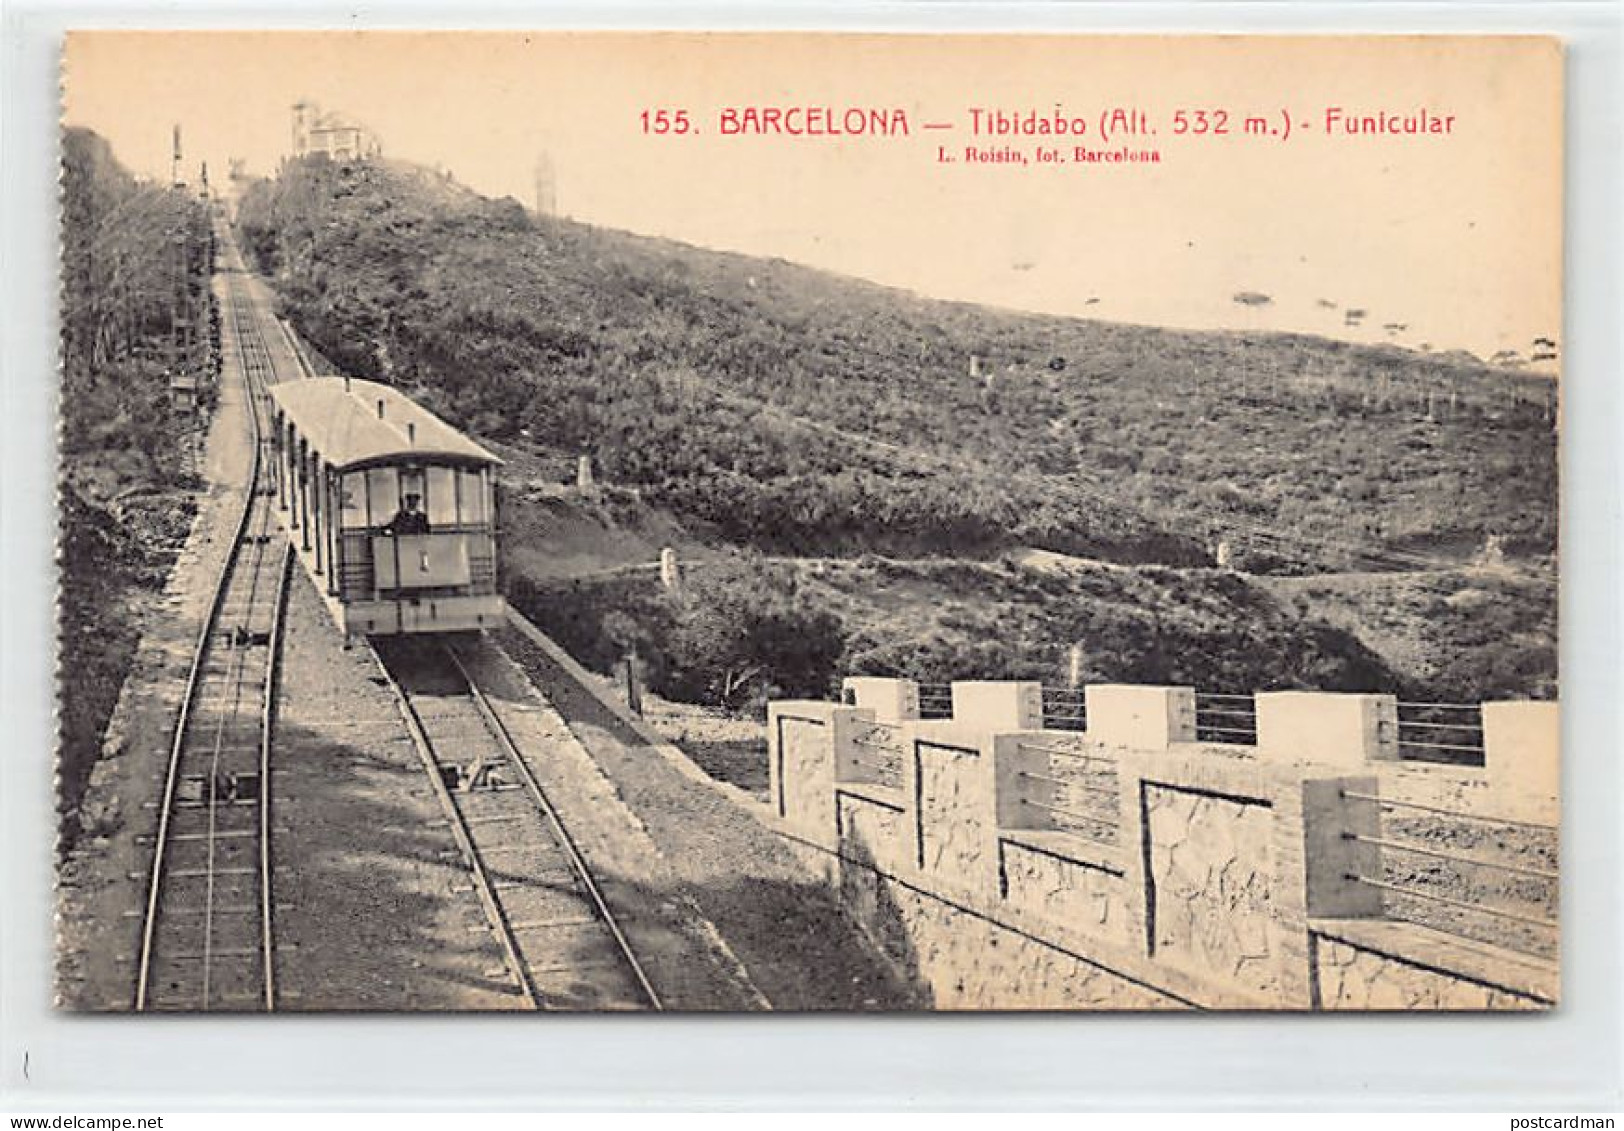 España - BARCELONA - Funicular - Tibidabo - Ed. L. Roisin 155 - Barcelona